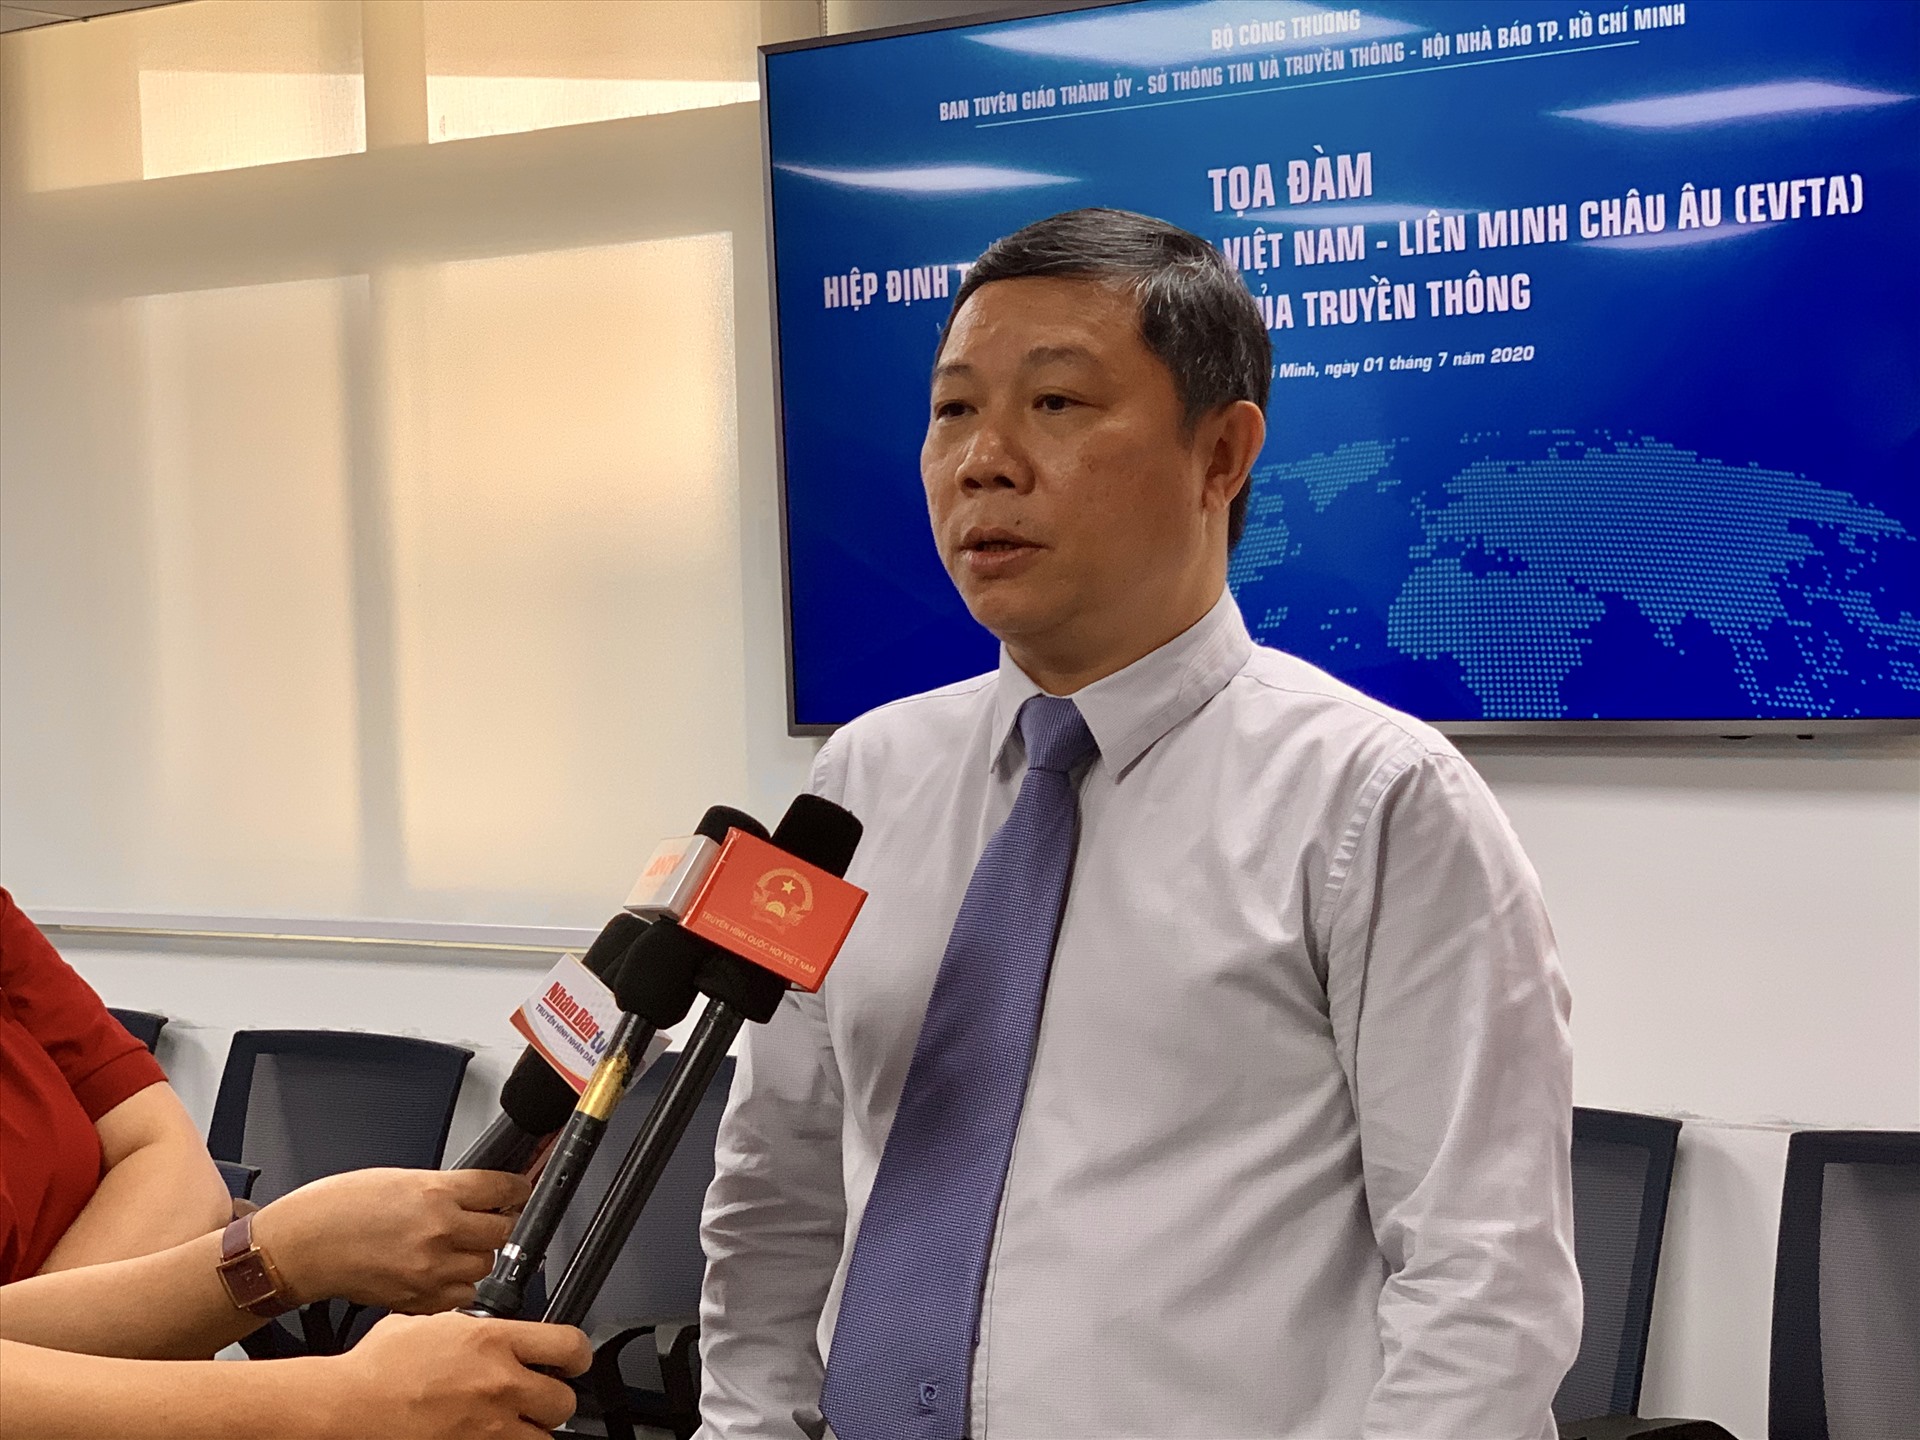 Ông Dương Anh Đức, Thành uỷ viên, Phó chủ tịch UBND TPHCM cho biết, thành phố sẽ nắm bắt cơ hội và xây dựng chương trình hành động để thực hiện triển khai Hiệp định EVFTA. Ảnh: Ngọc Lê